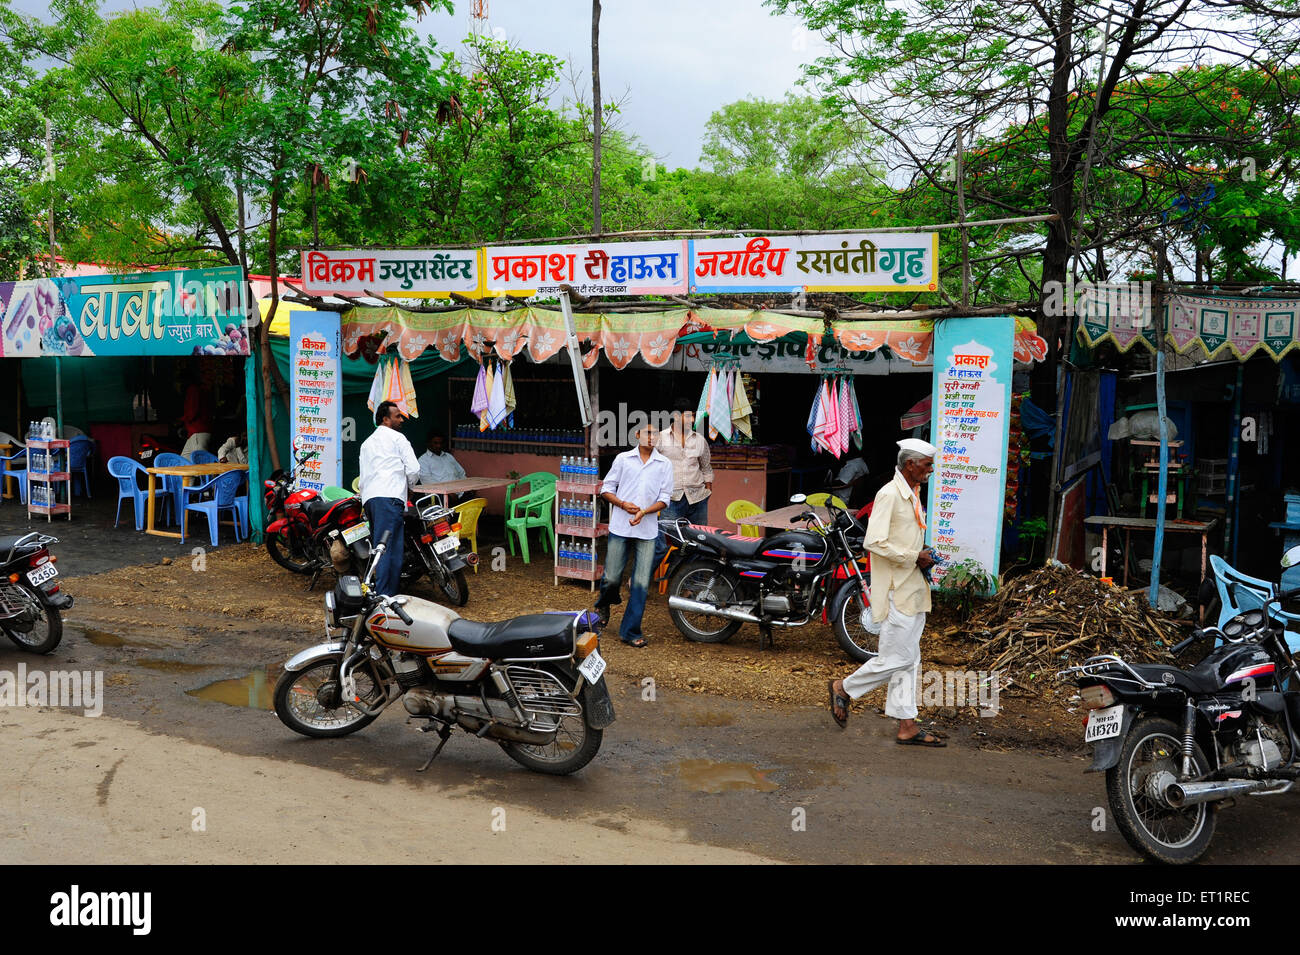 Boutique de bord de route ; Hôtel de route ; Solapur ; Maharashtra ; Inde ;Asie Banque D'Images